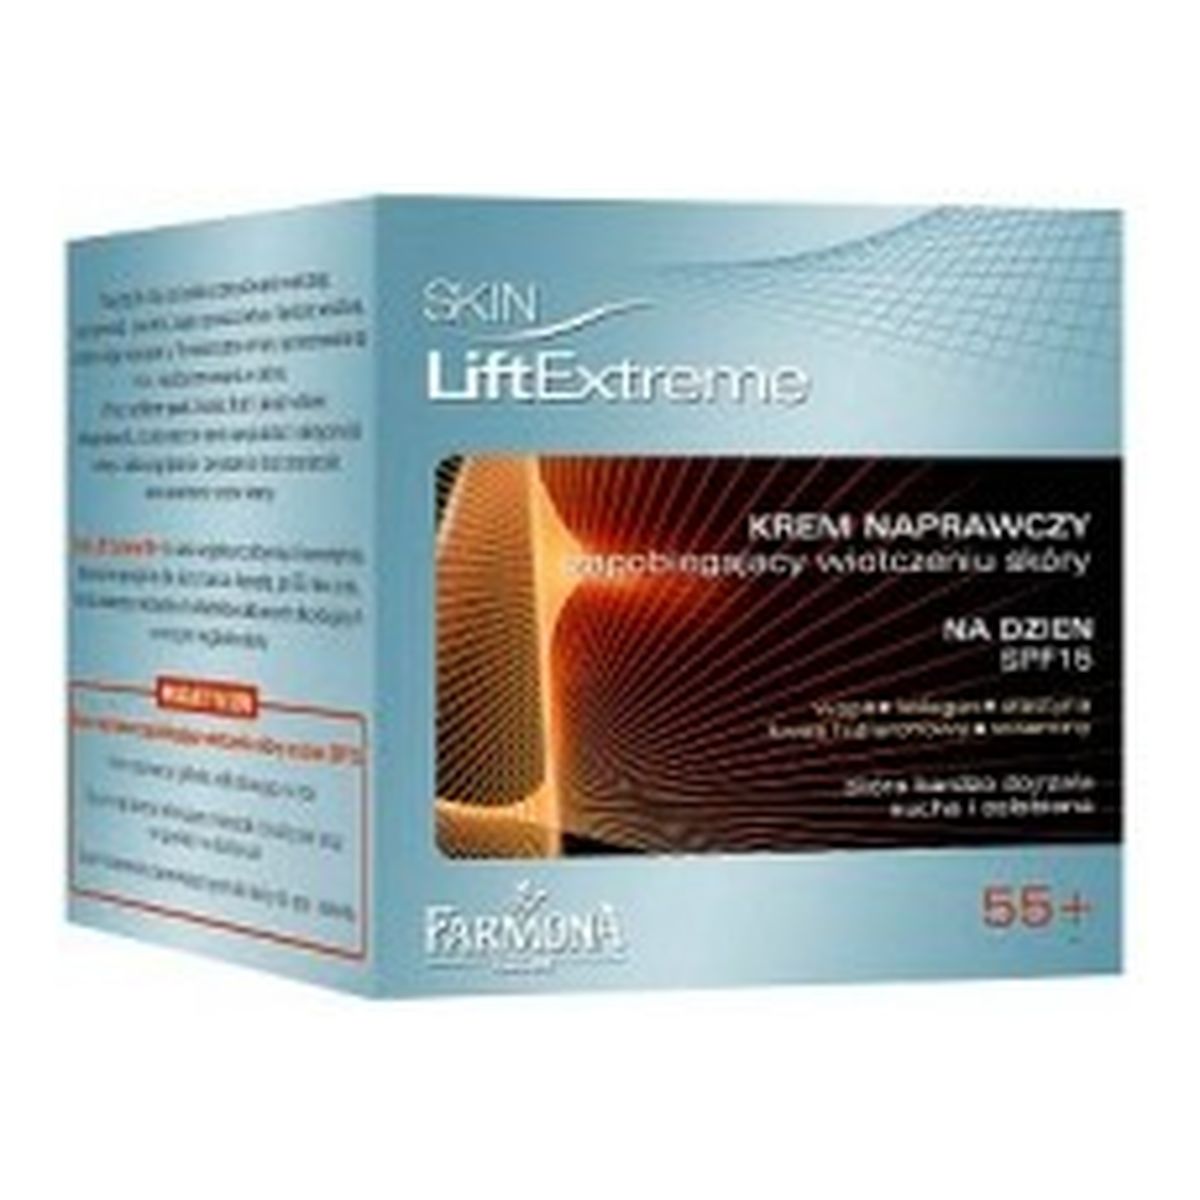 Farmona Extreme 55 Skin Lift Krem Naprawczy Zapobiegający Wiotczeniu Skóry Na Dzień 15 SPF 50ml